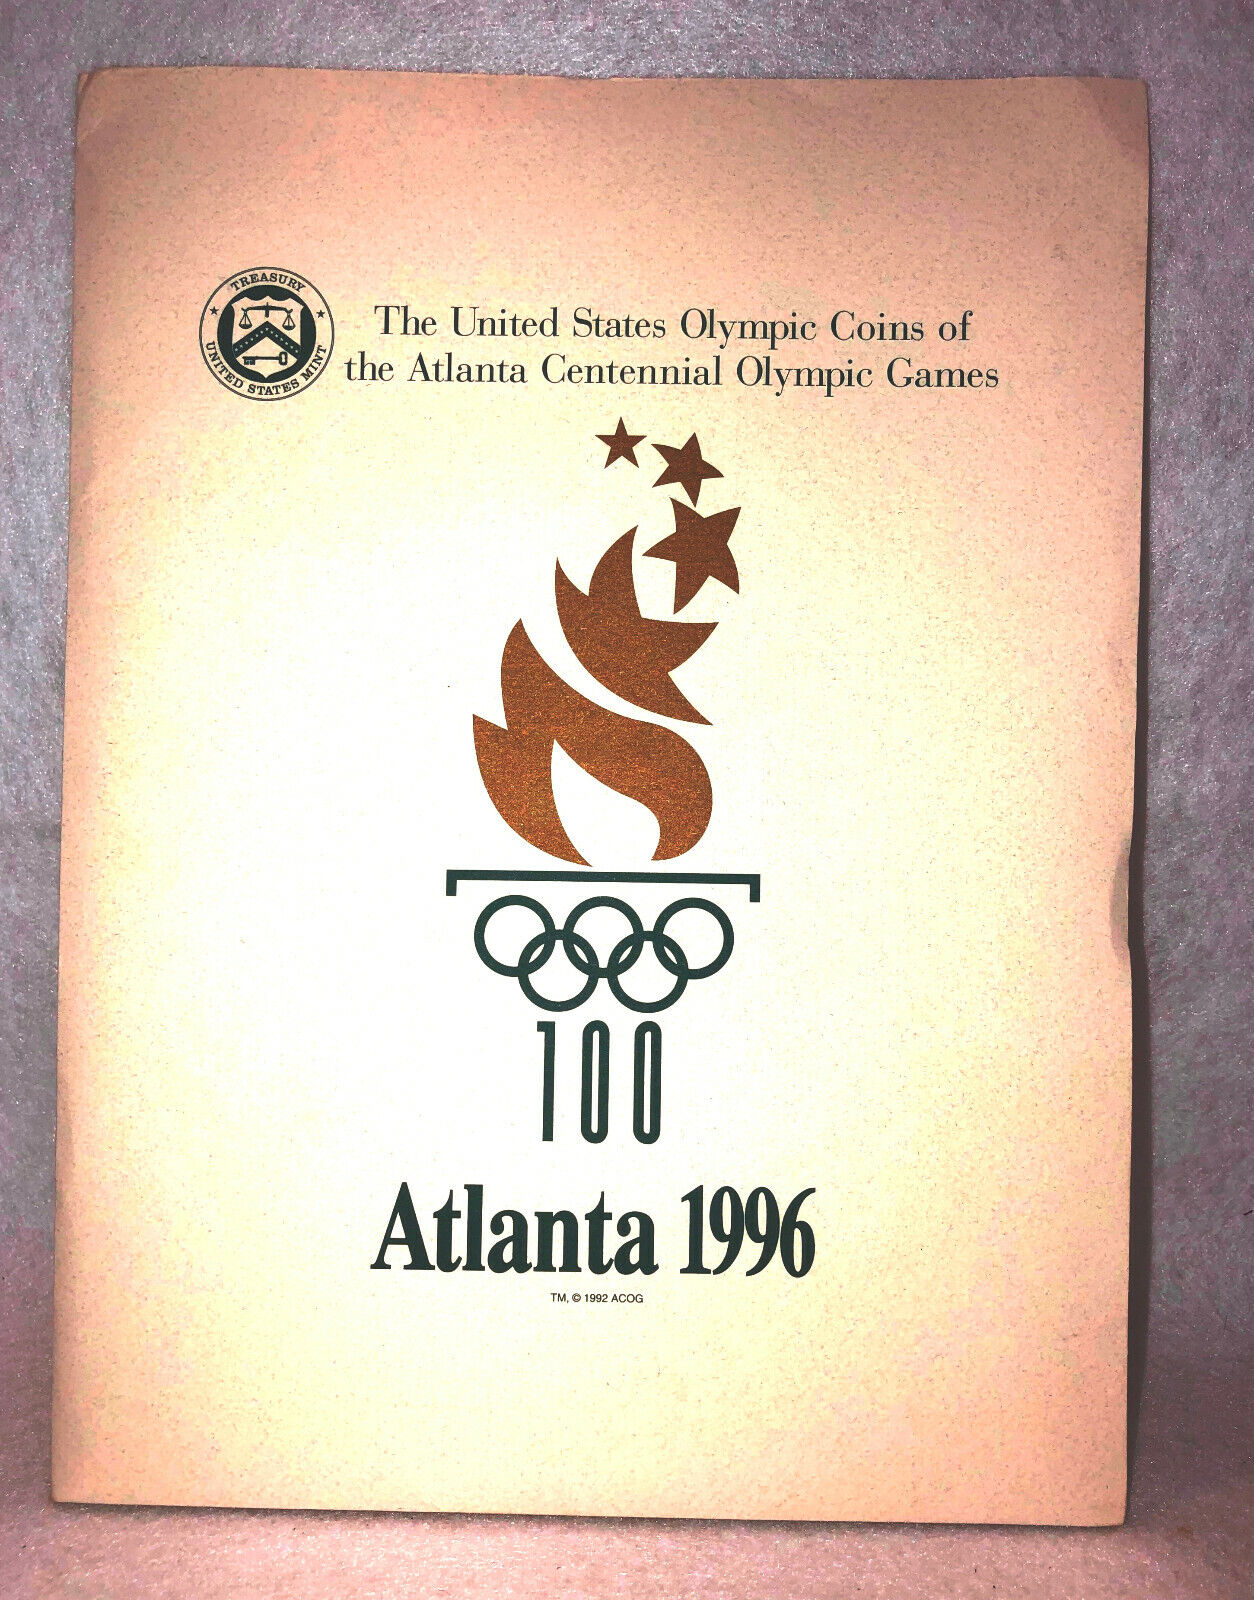 K146 XXVI OLYMPIAD ATLANTA 1996 - US MINT PRESS PACKET OF THE 1996 OLYMPIC COINS Atlanta 1996 Olympics